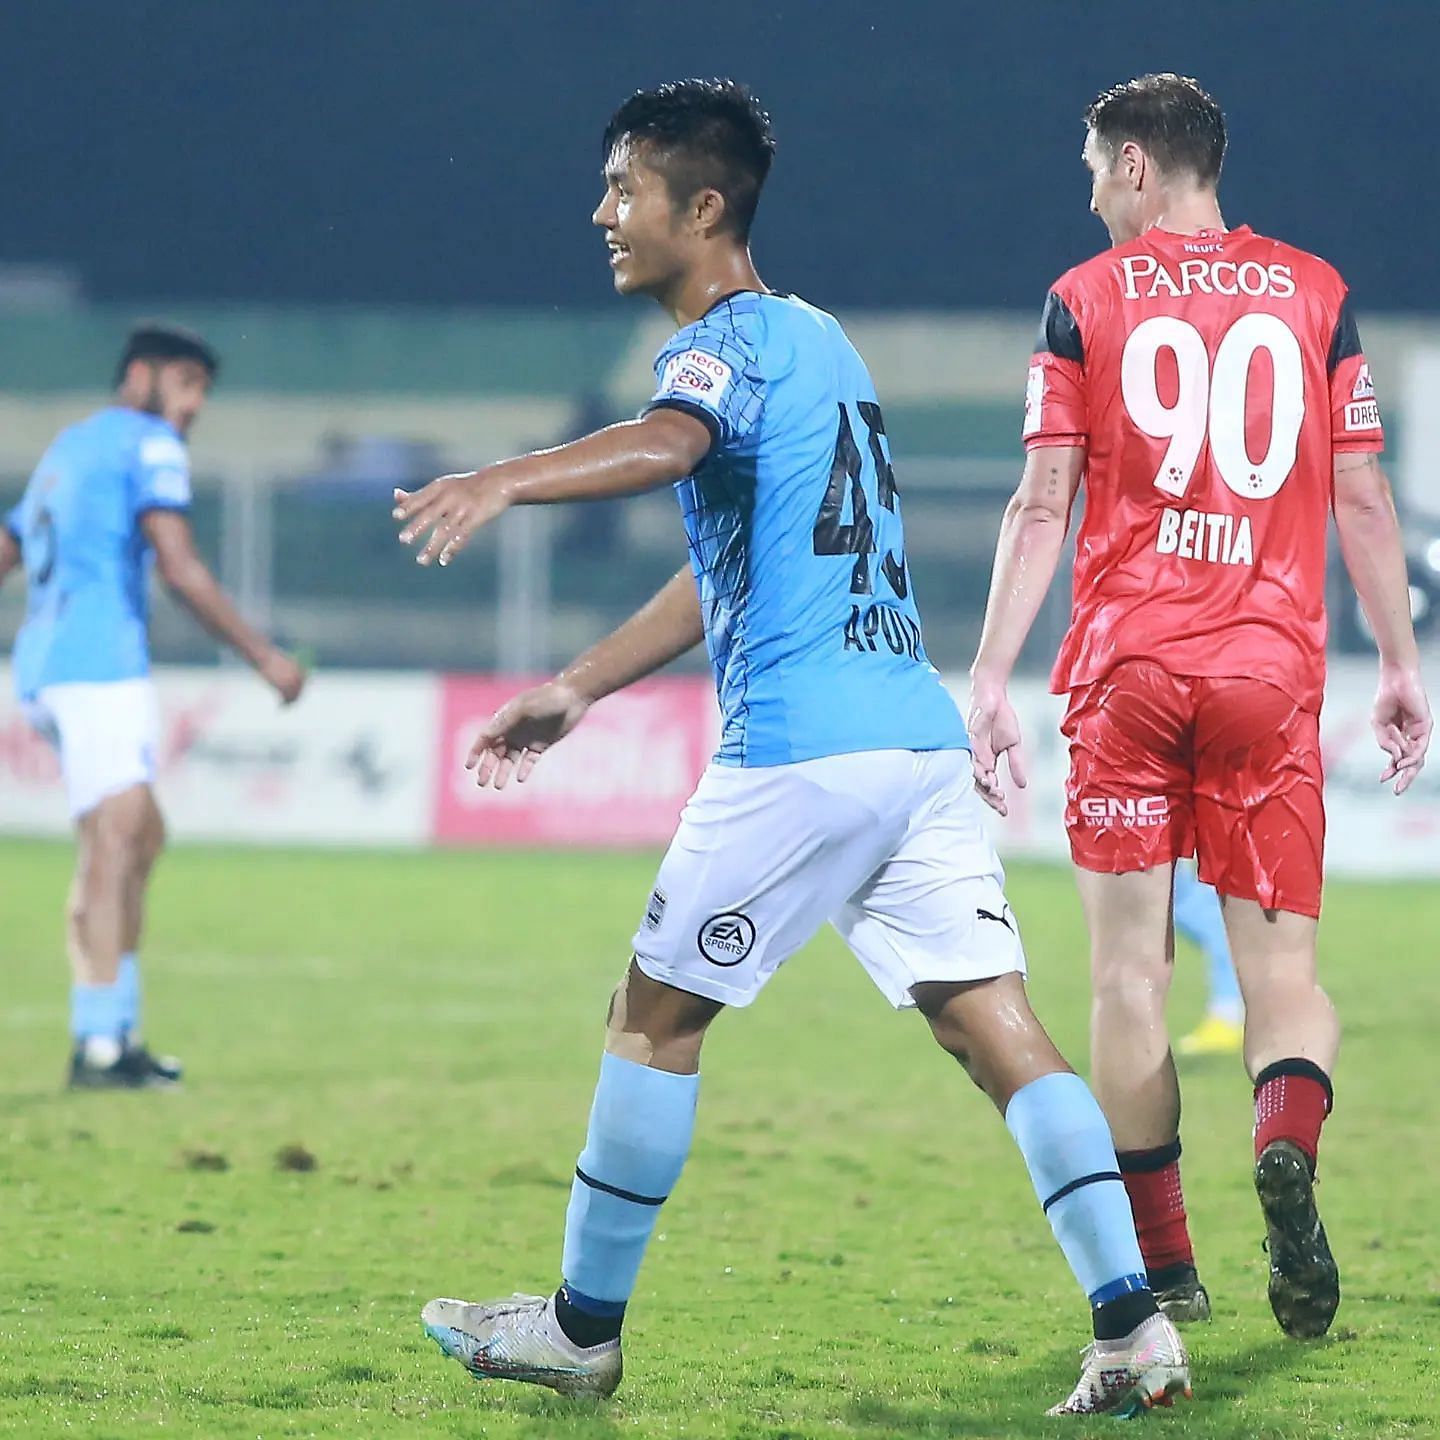 Apuia scored a brilliant goal (Image courtesy: AIFF Media)